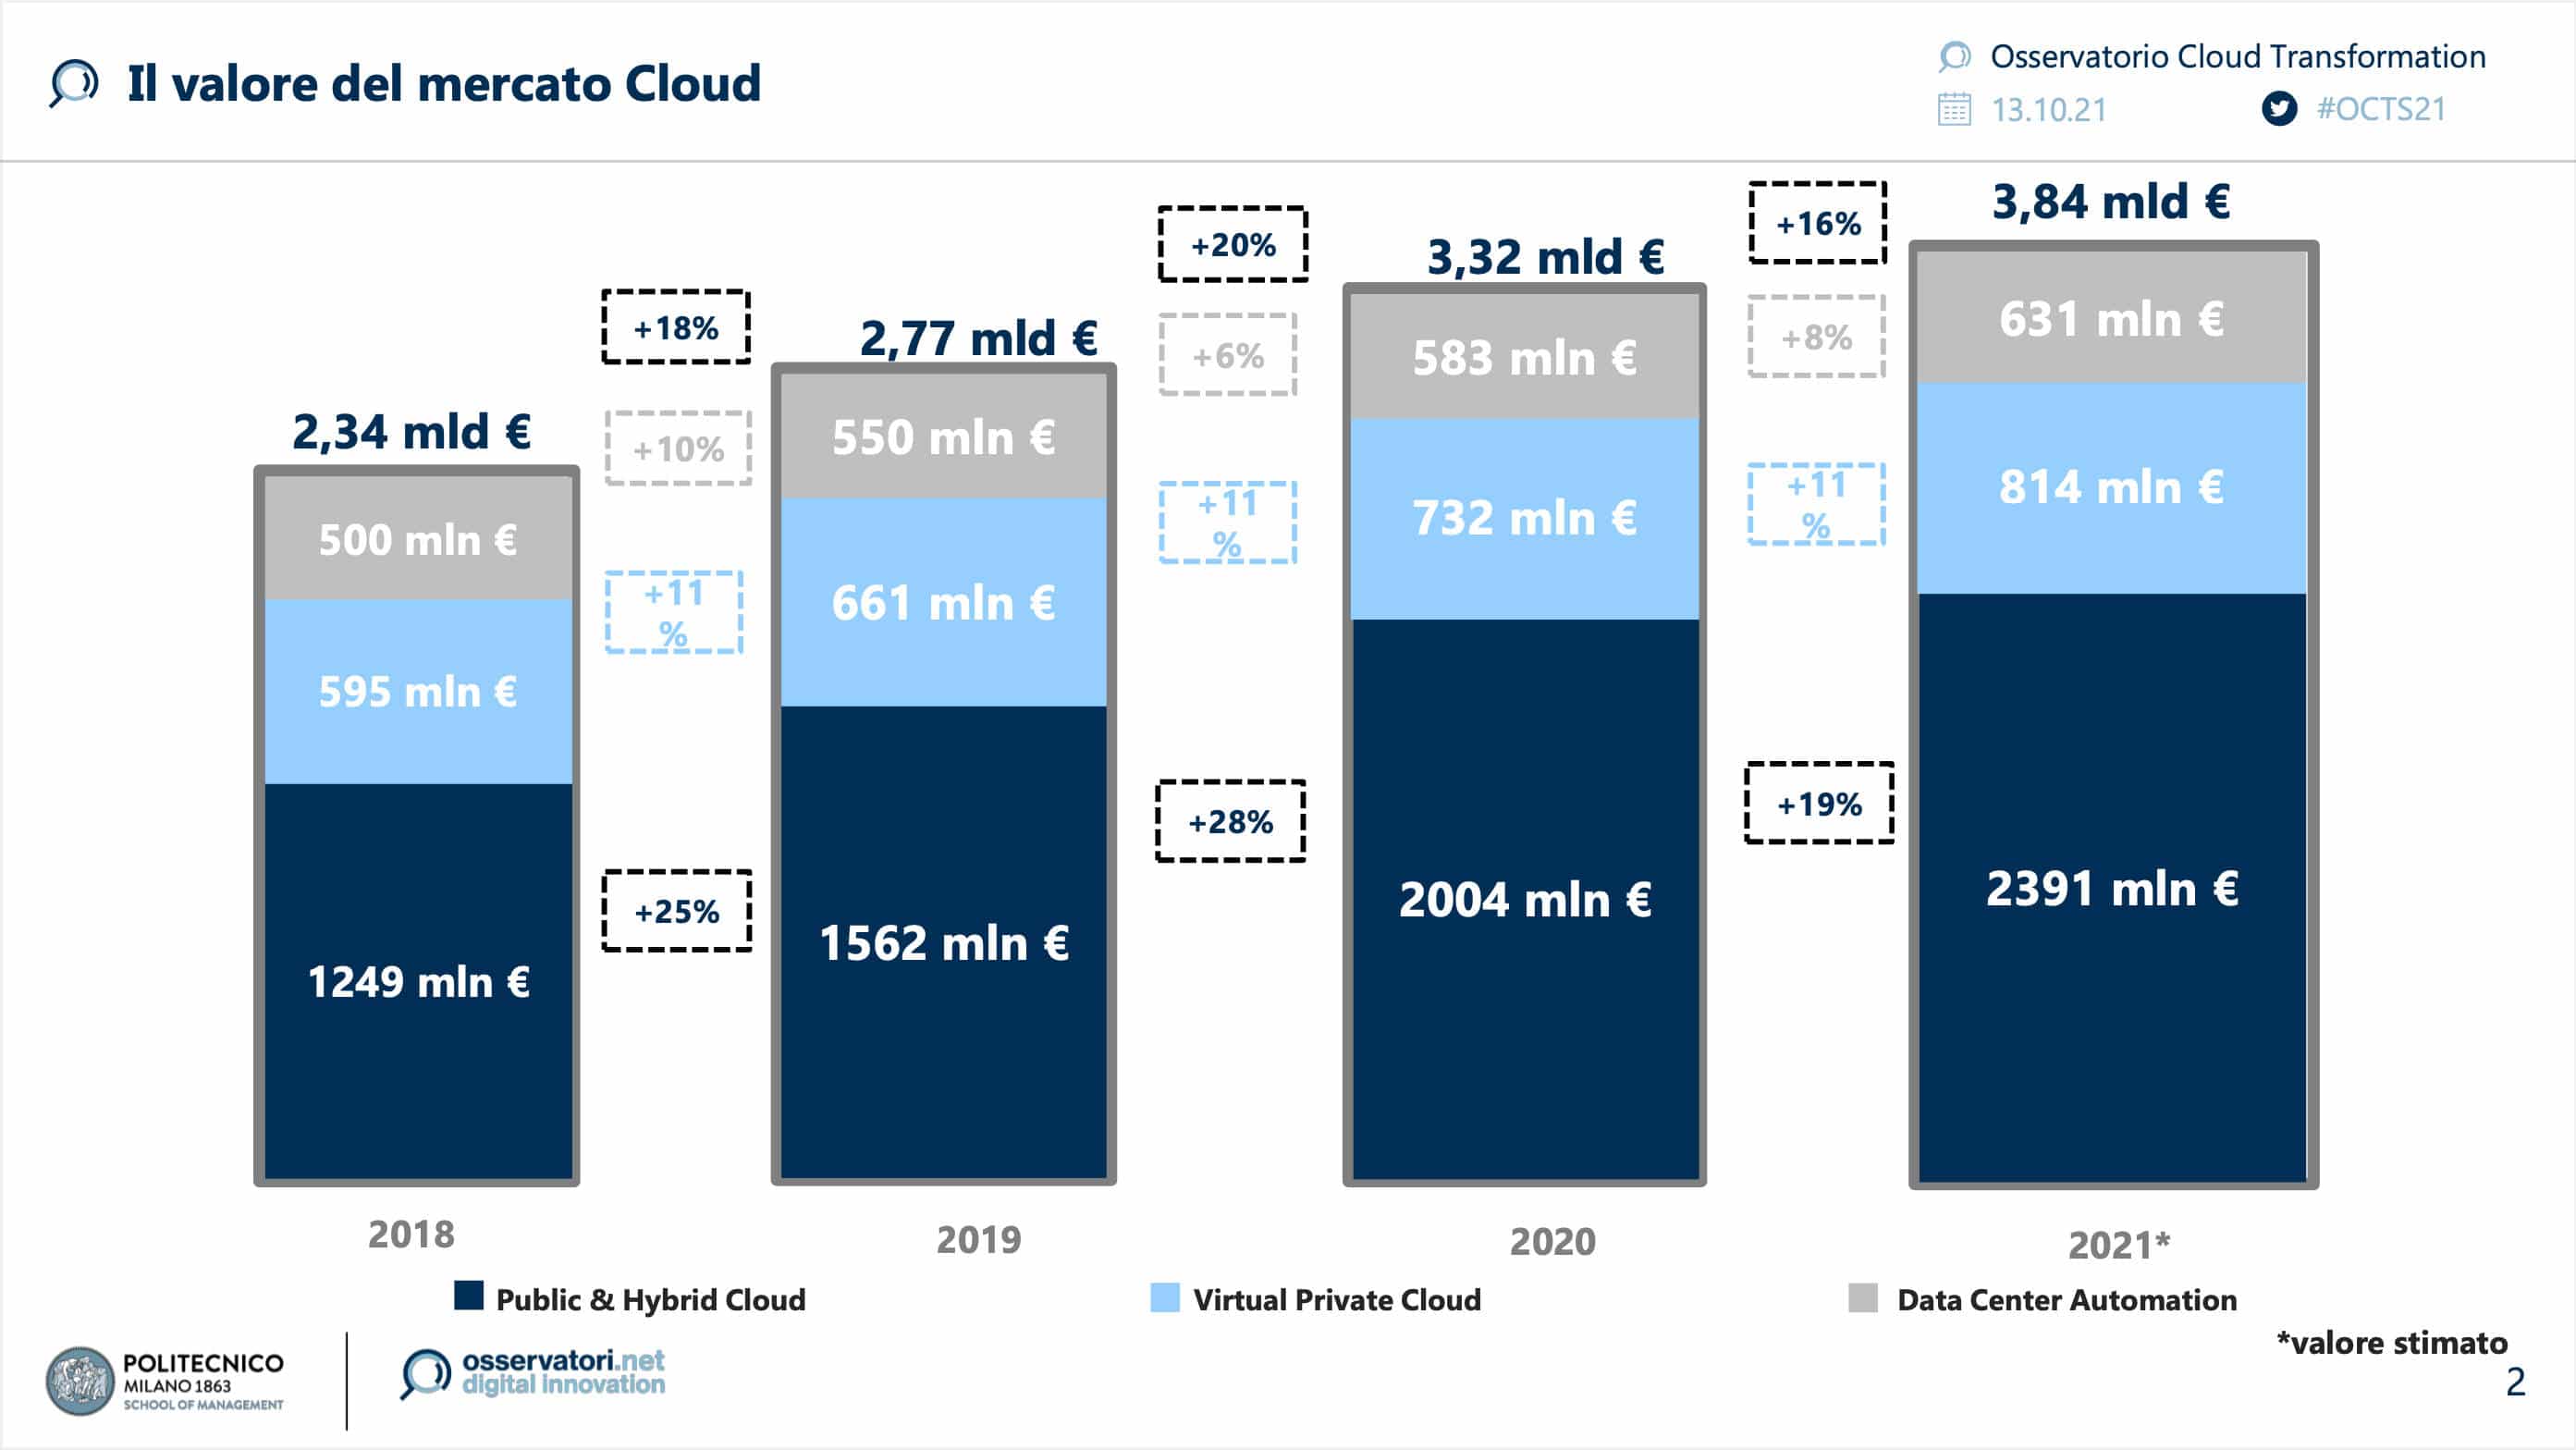 Værdien af cloud-markedet i Italien 